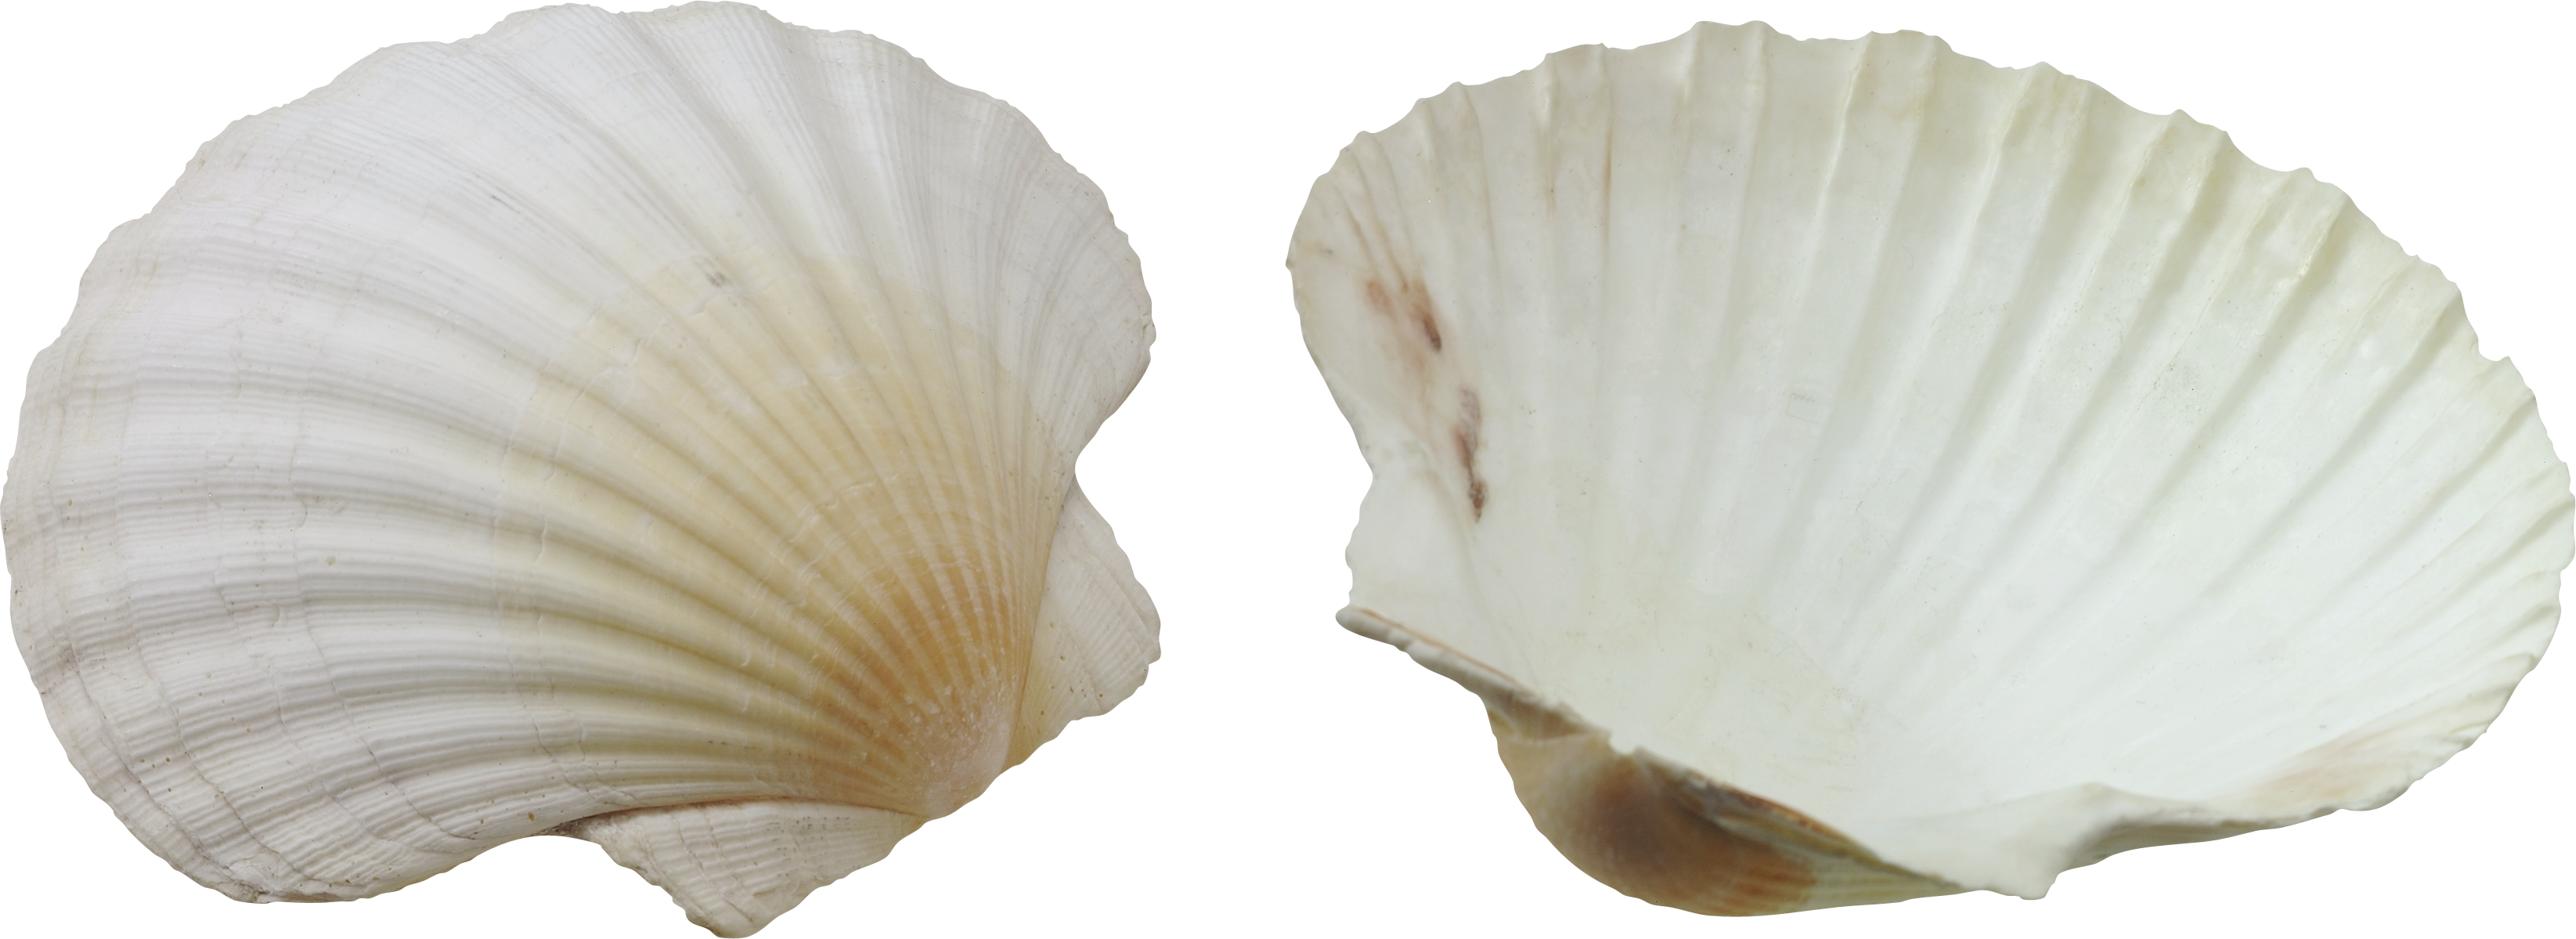 A Close Up Of Shells